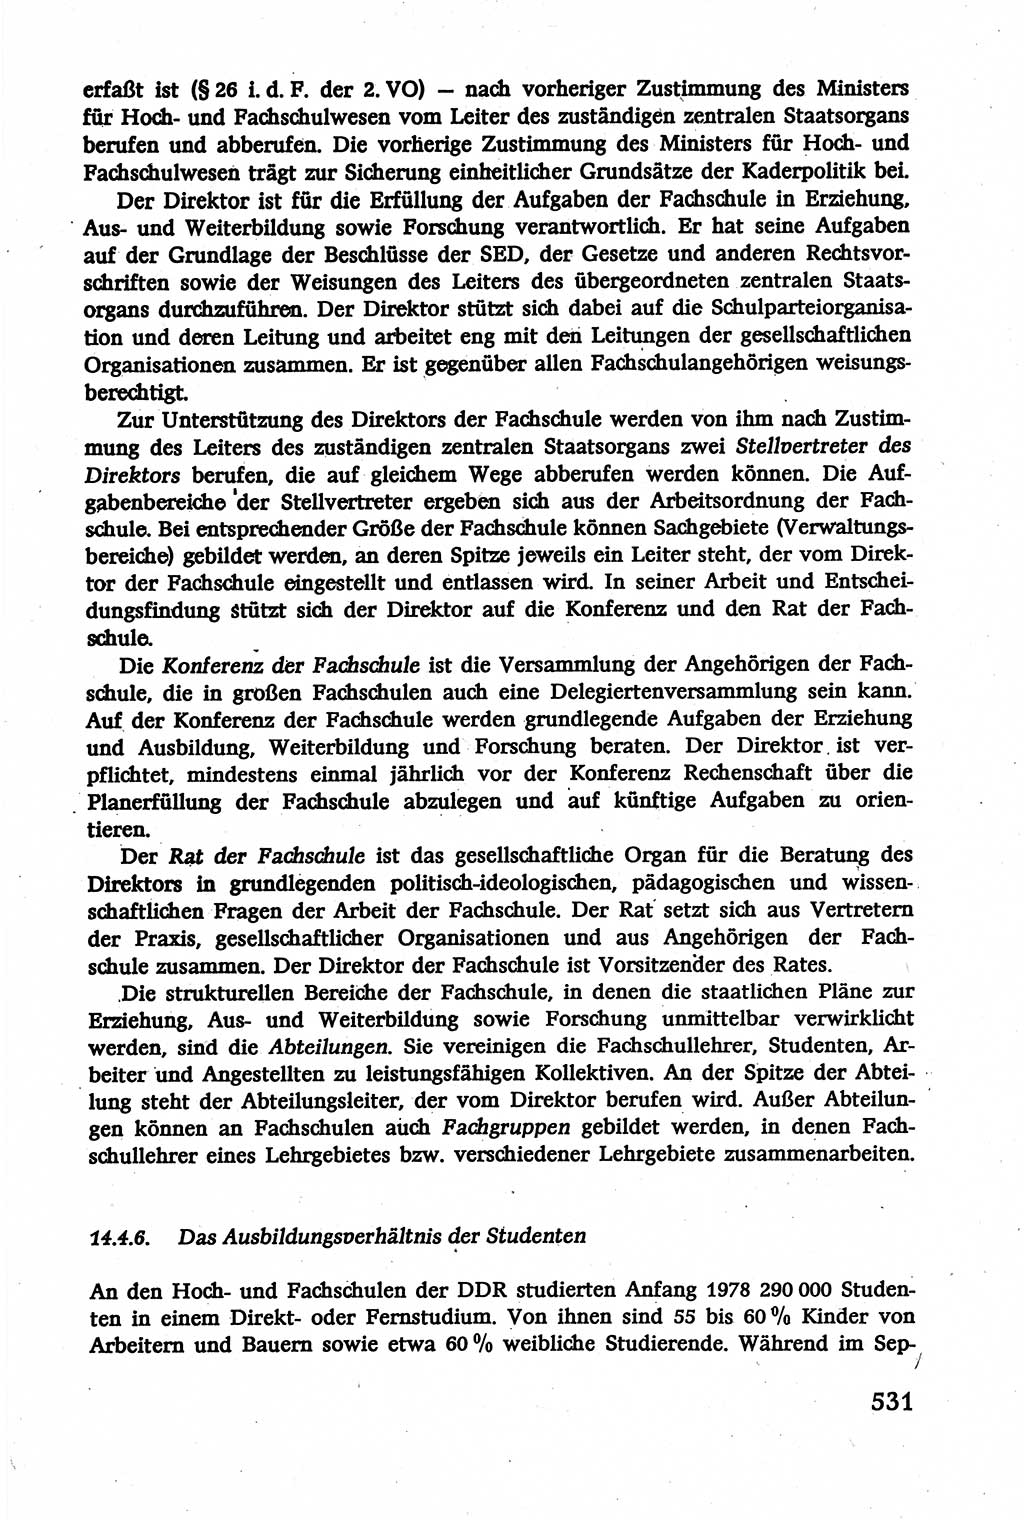 Verwaltungsrecht [Deutsche Demokratische Republik (DDR)], Lehrbuch 1979, Seite 531 (Verw.-R. DDR Lb. 1979, S. 531)